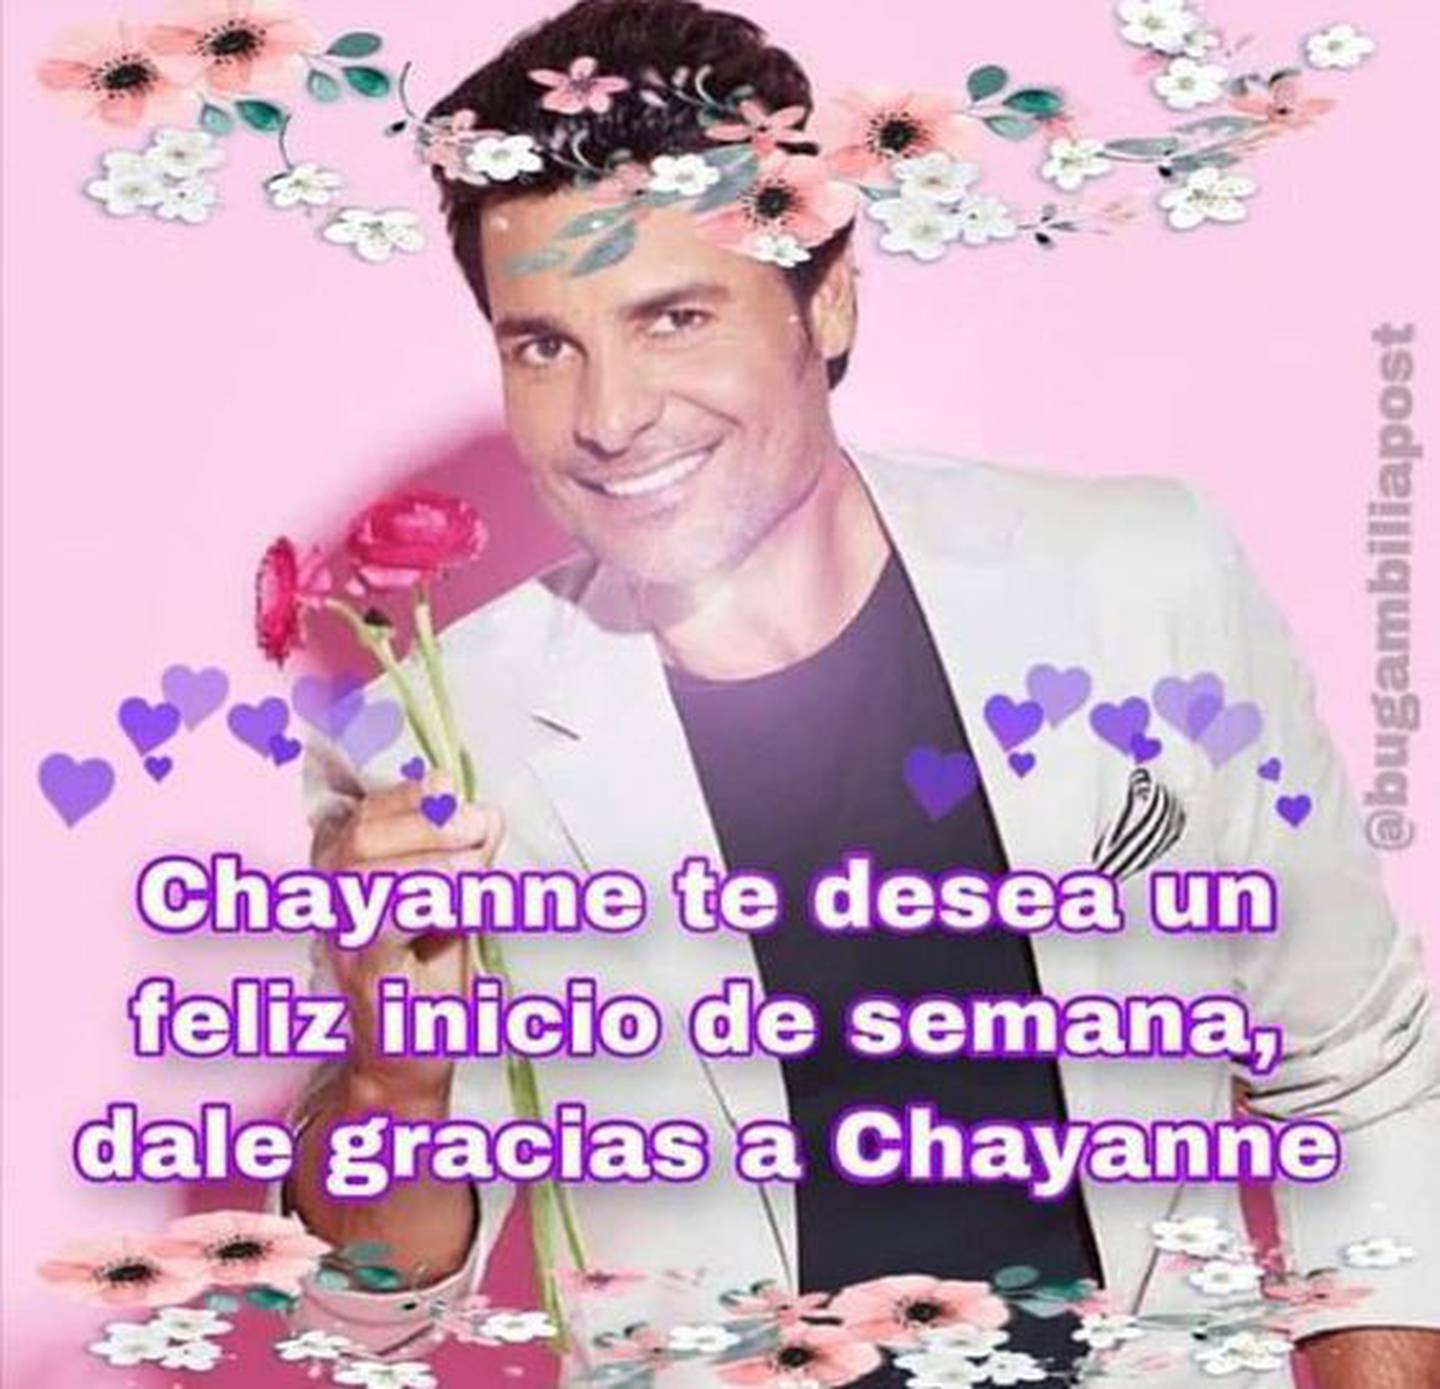 Chayanne sonriendo con una rosa en la mano y una frase sobre él que dice "Chayanne te desea un feliz inicio de semana, dale gracias a Chayanne".